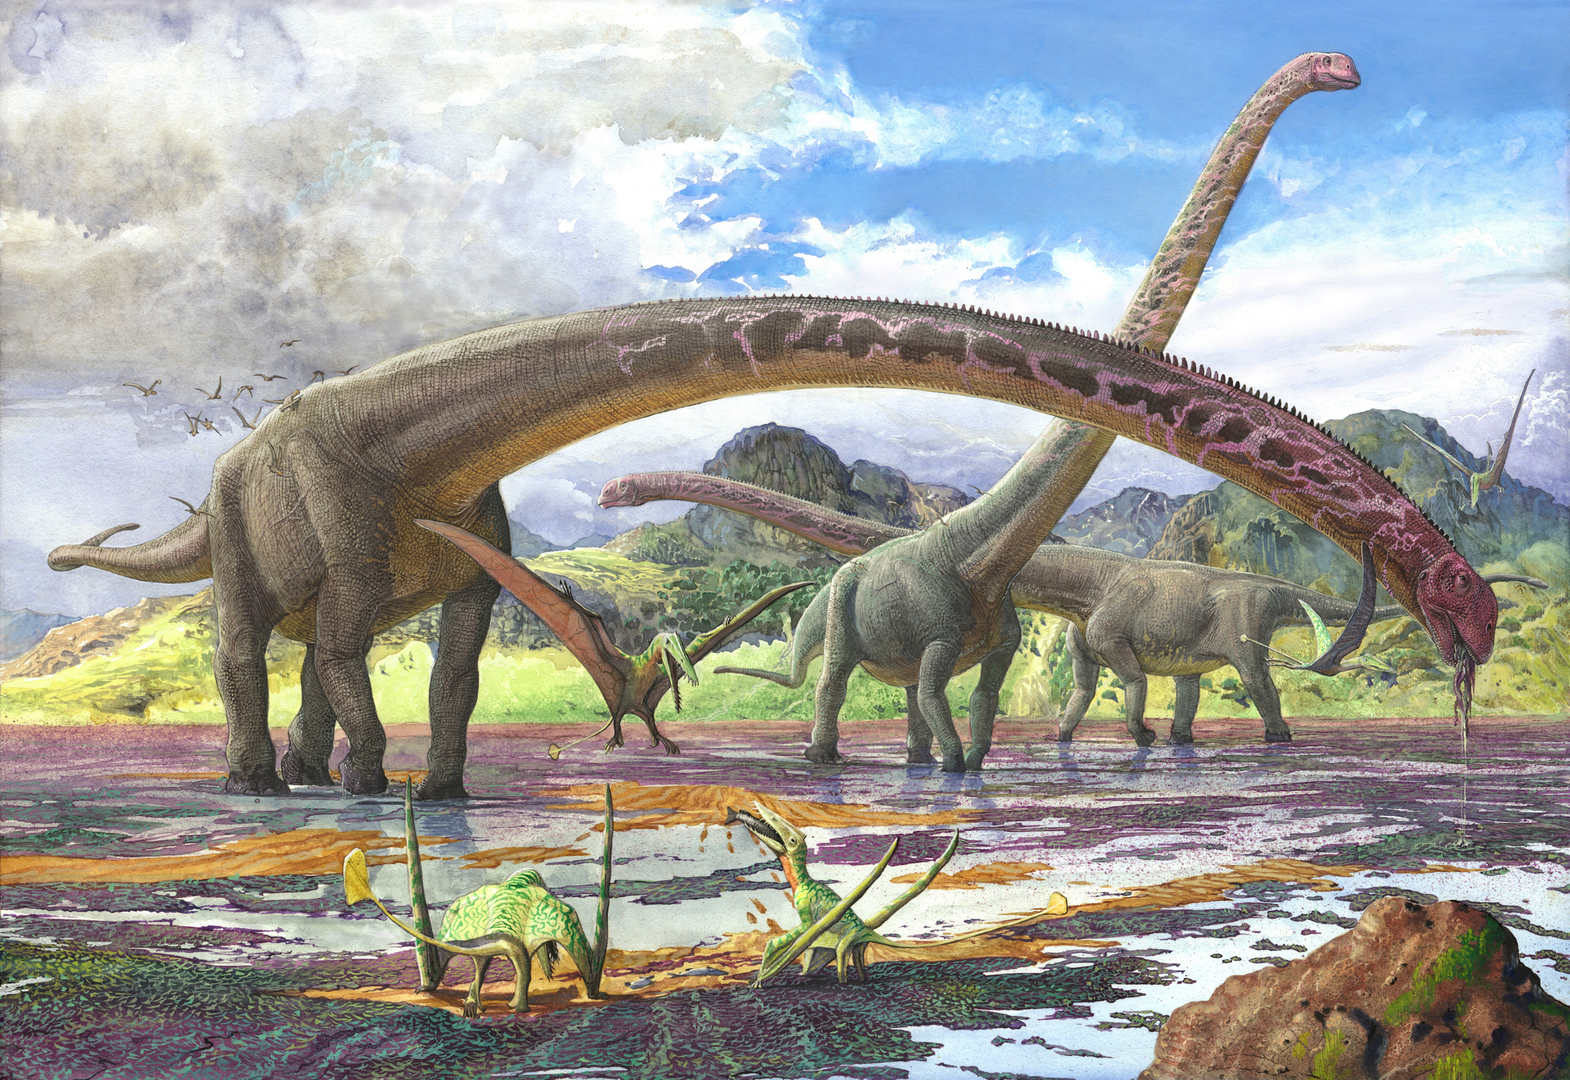 العثور على أقدم ديناصور معروف حتى الآن في زيمبابوي